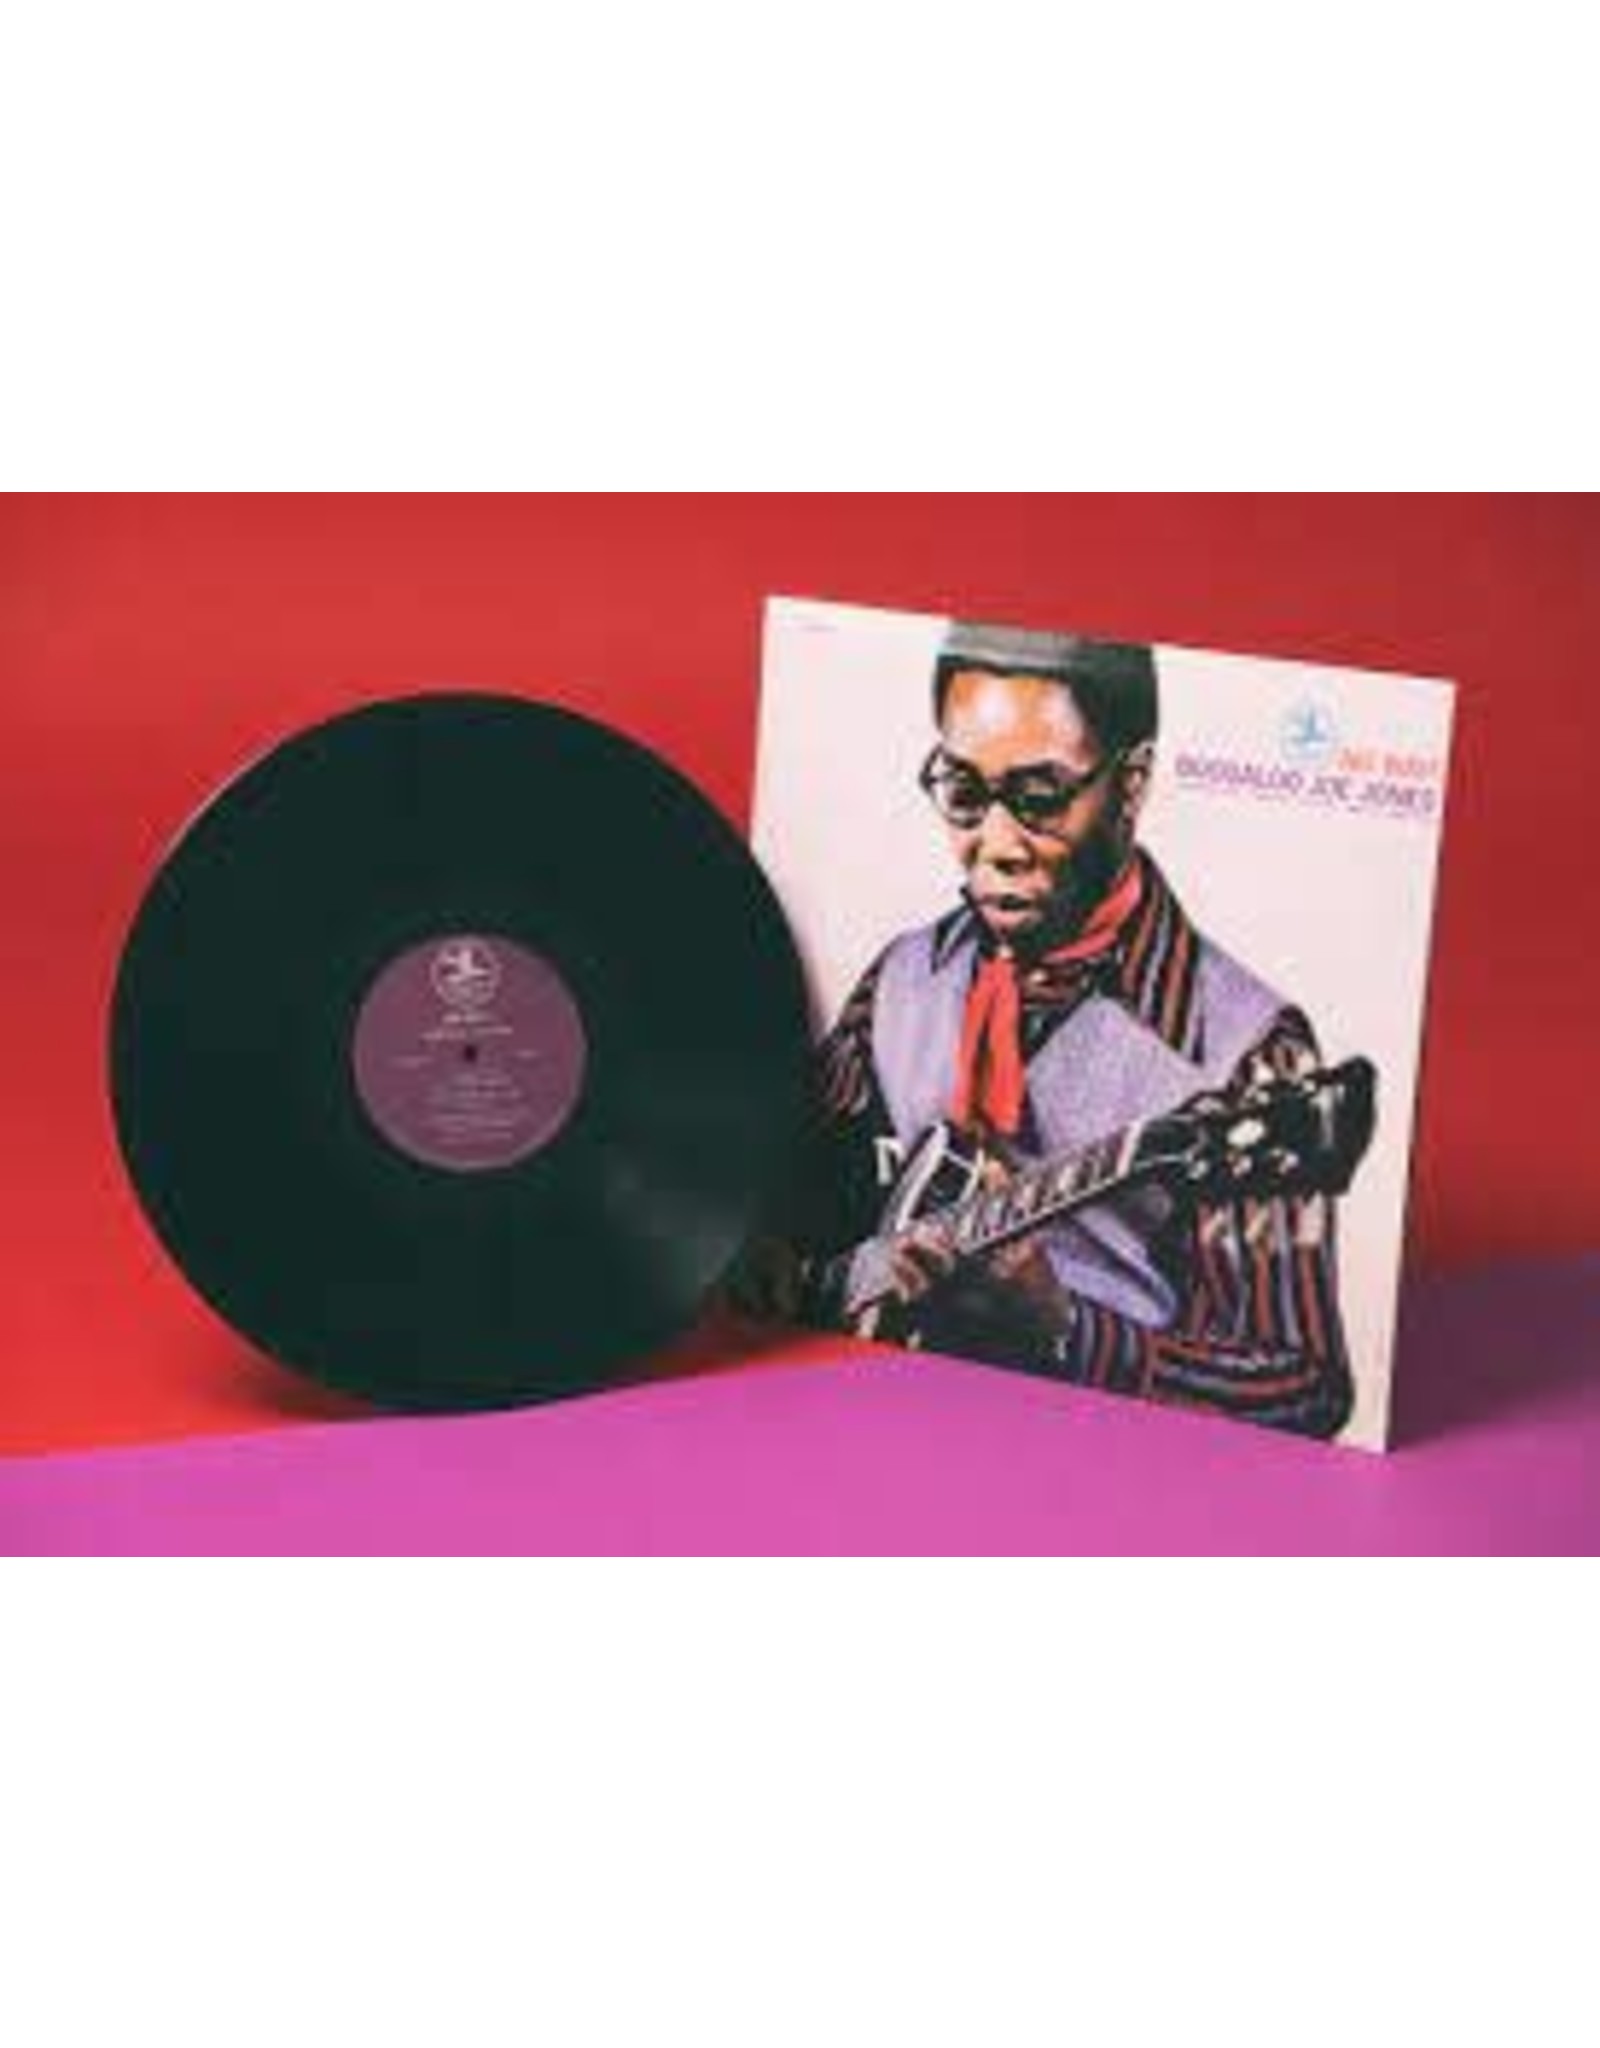 Jones, Boogaloo Joe - No Way LP (Vinyl Me Please Ltd Pressing)